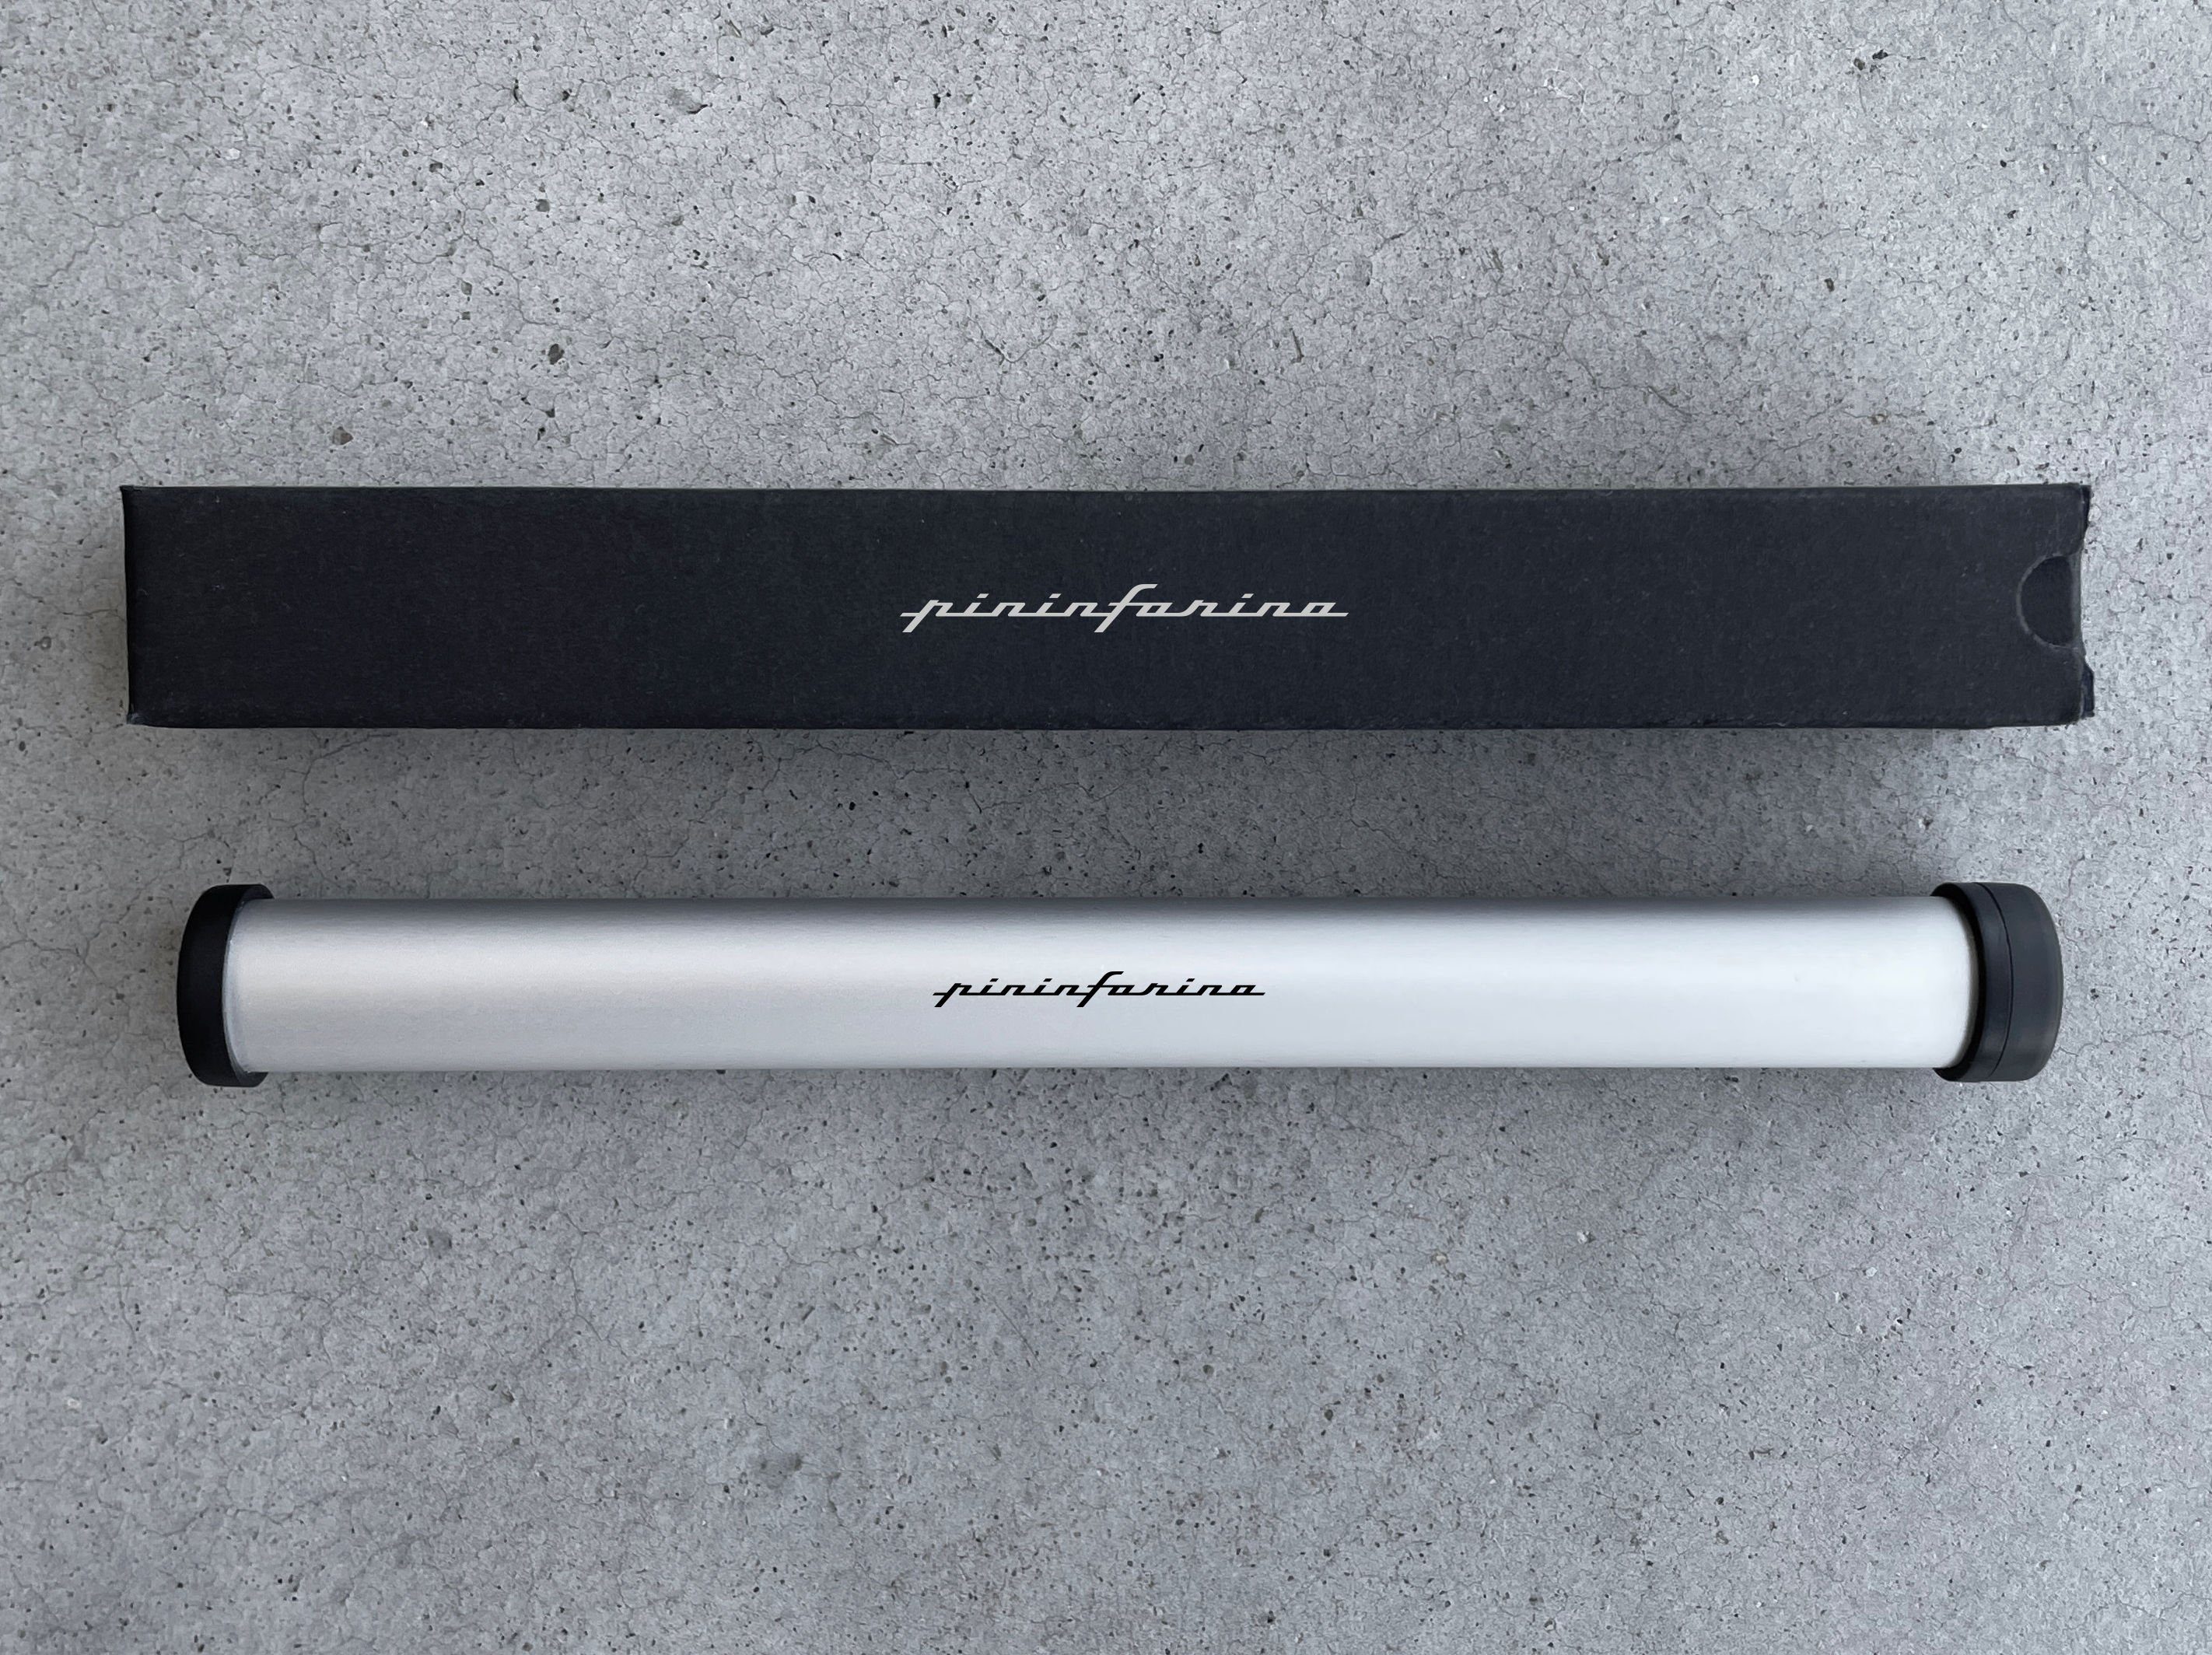 Pininfarina Bleistift Bleistift Grafeex Pininfarina Farbe, 4 (kein Bleier Smart Set) Pencil Schreibgerät Grün